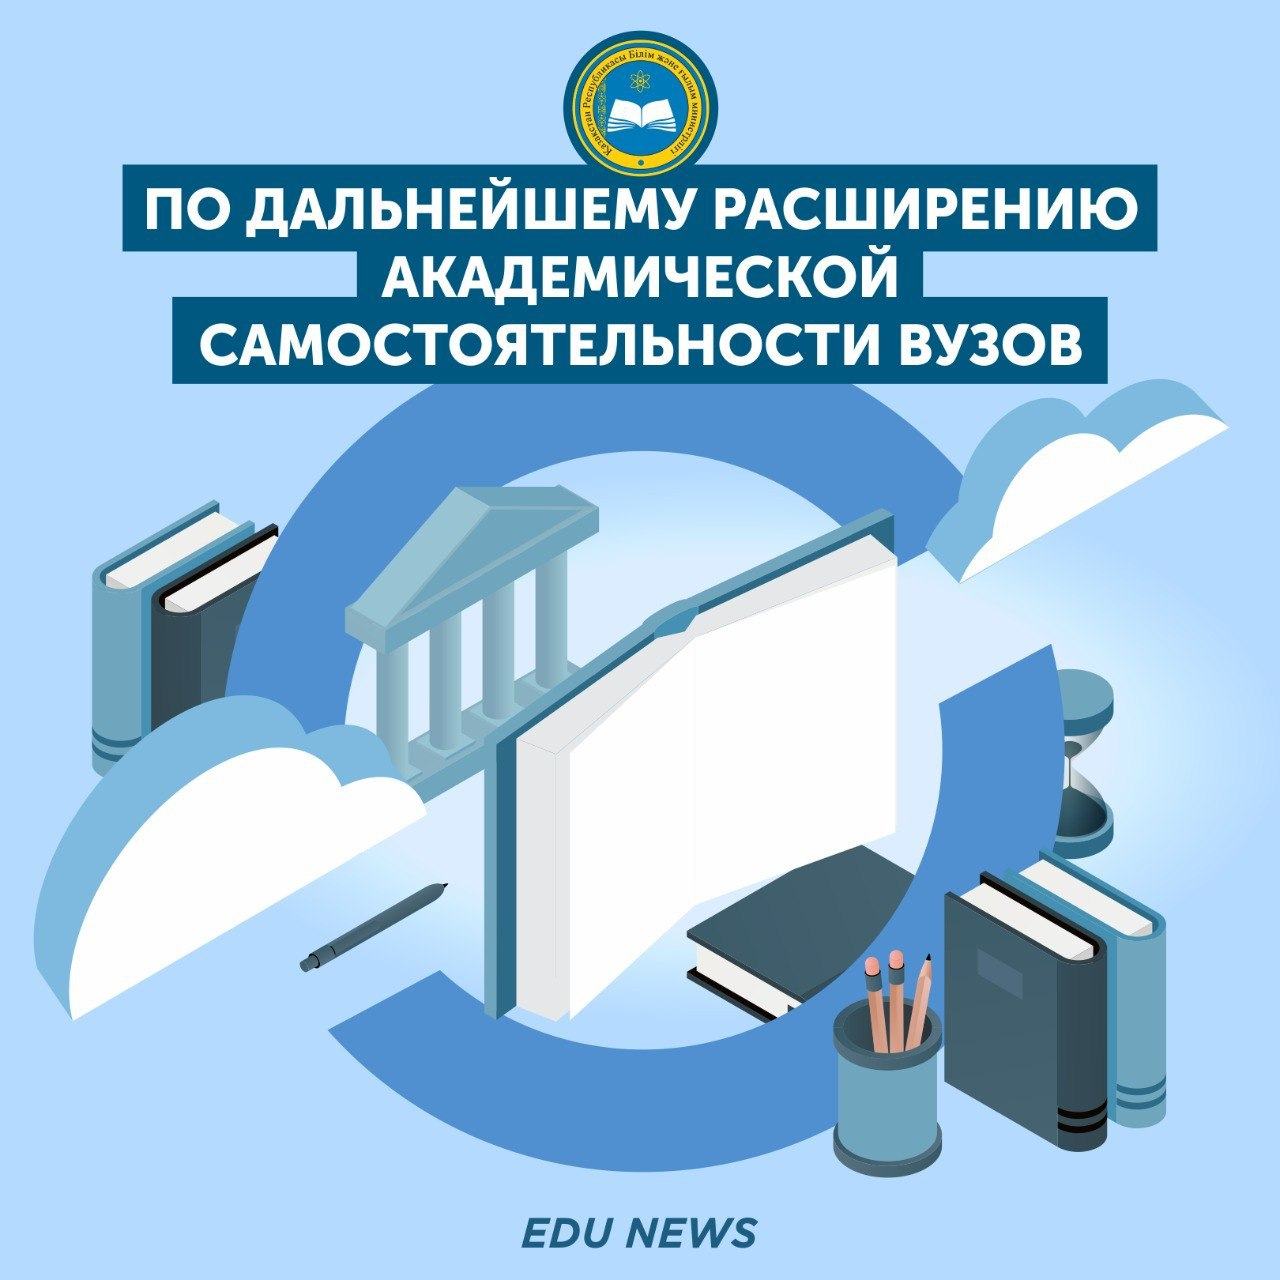 Президент Касым-Жомарт Токаев поручил министерству провести работу по дальнейшему расширению академической самостоятельности вузов